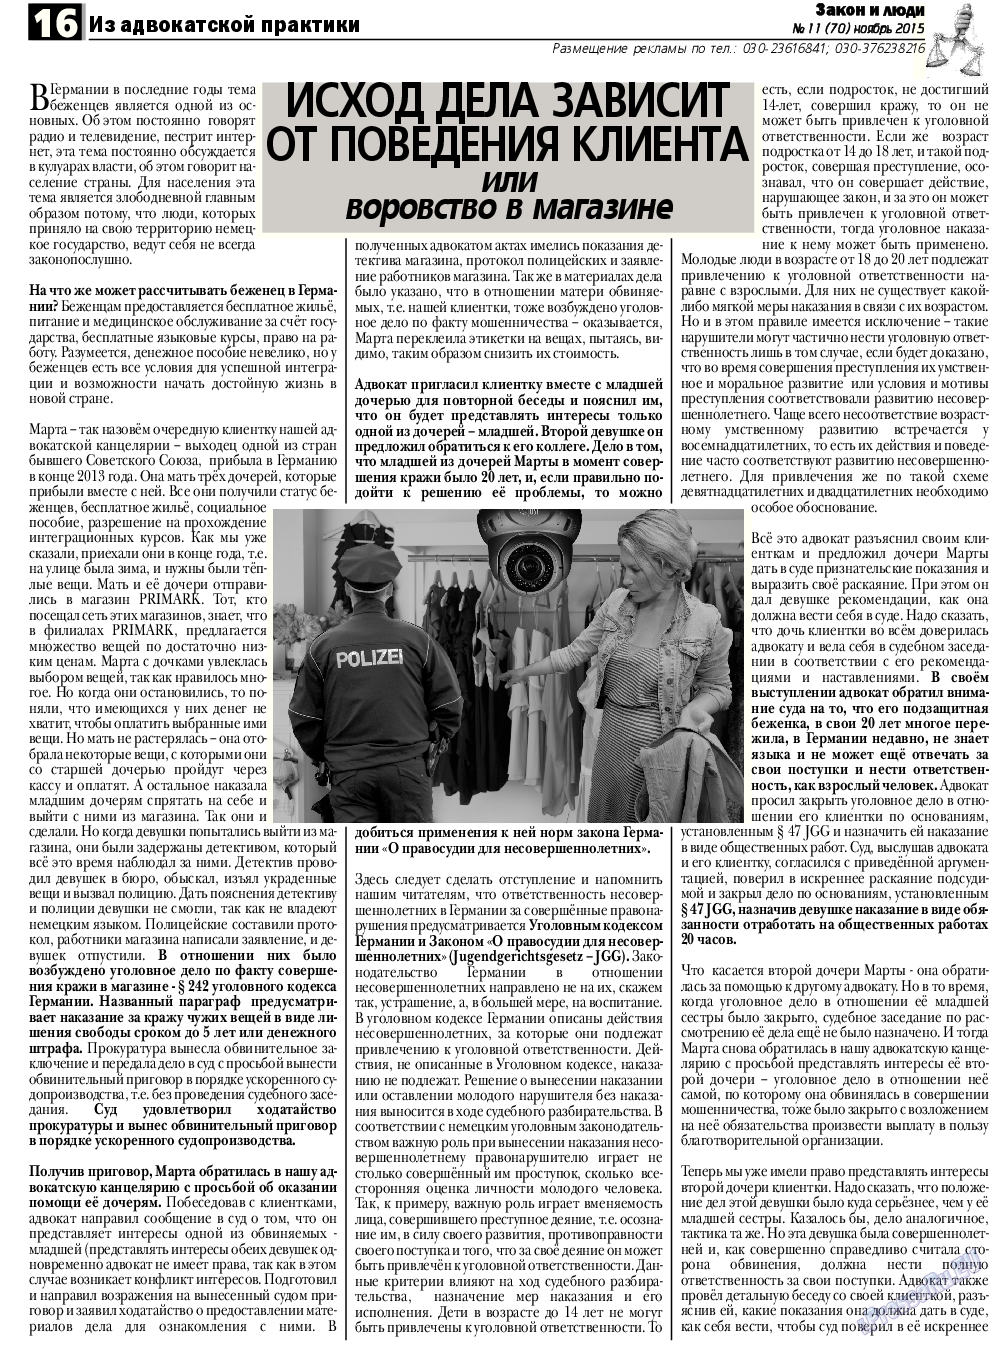 Закон и люди, газета. 2015 №11 стр.16